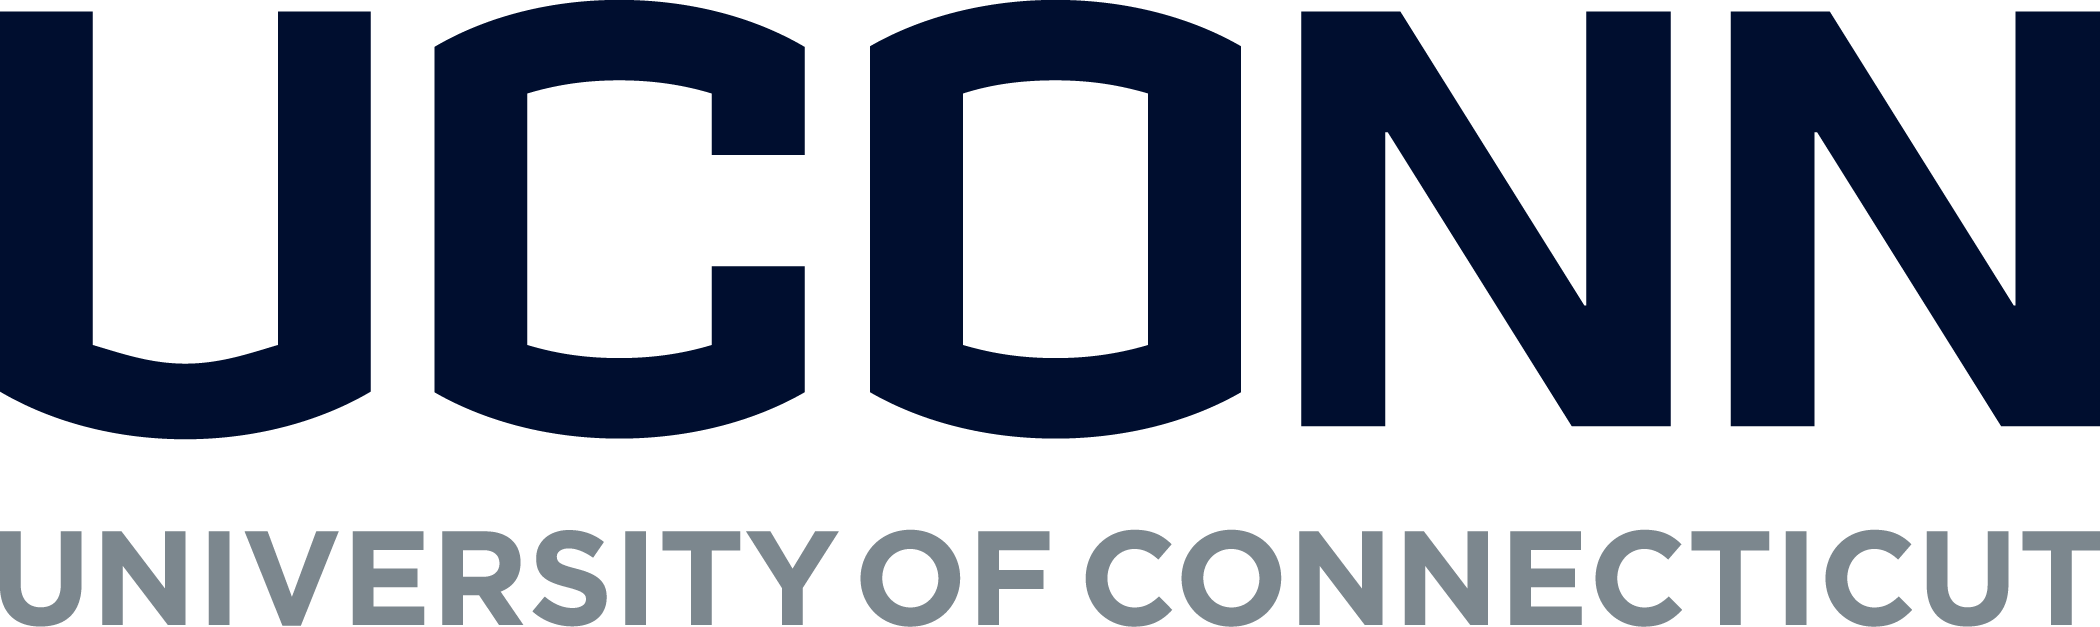 University of Connecticut - Quest Portal logo